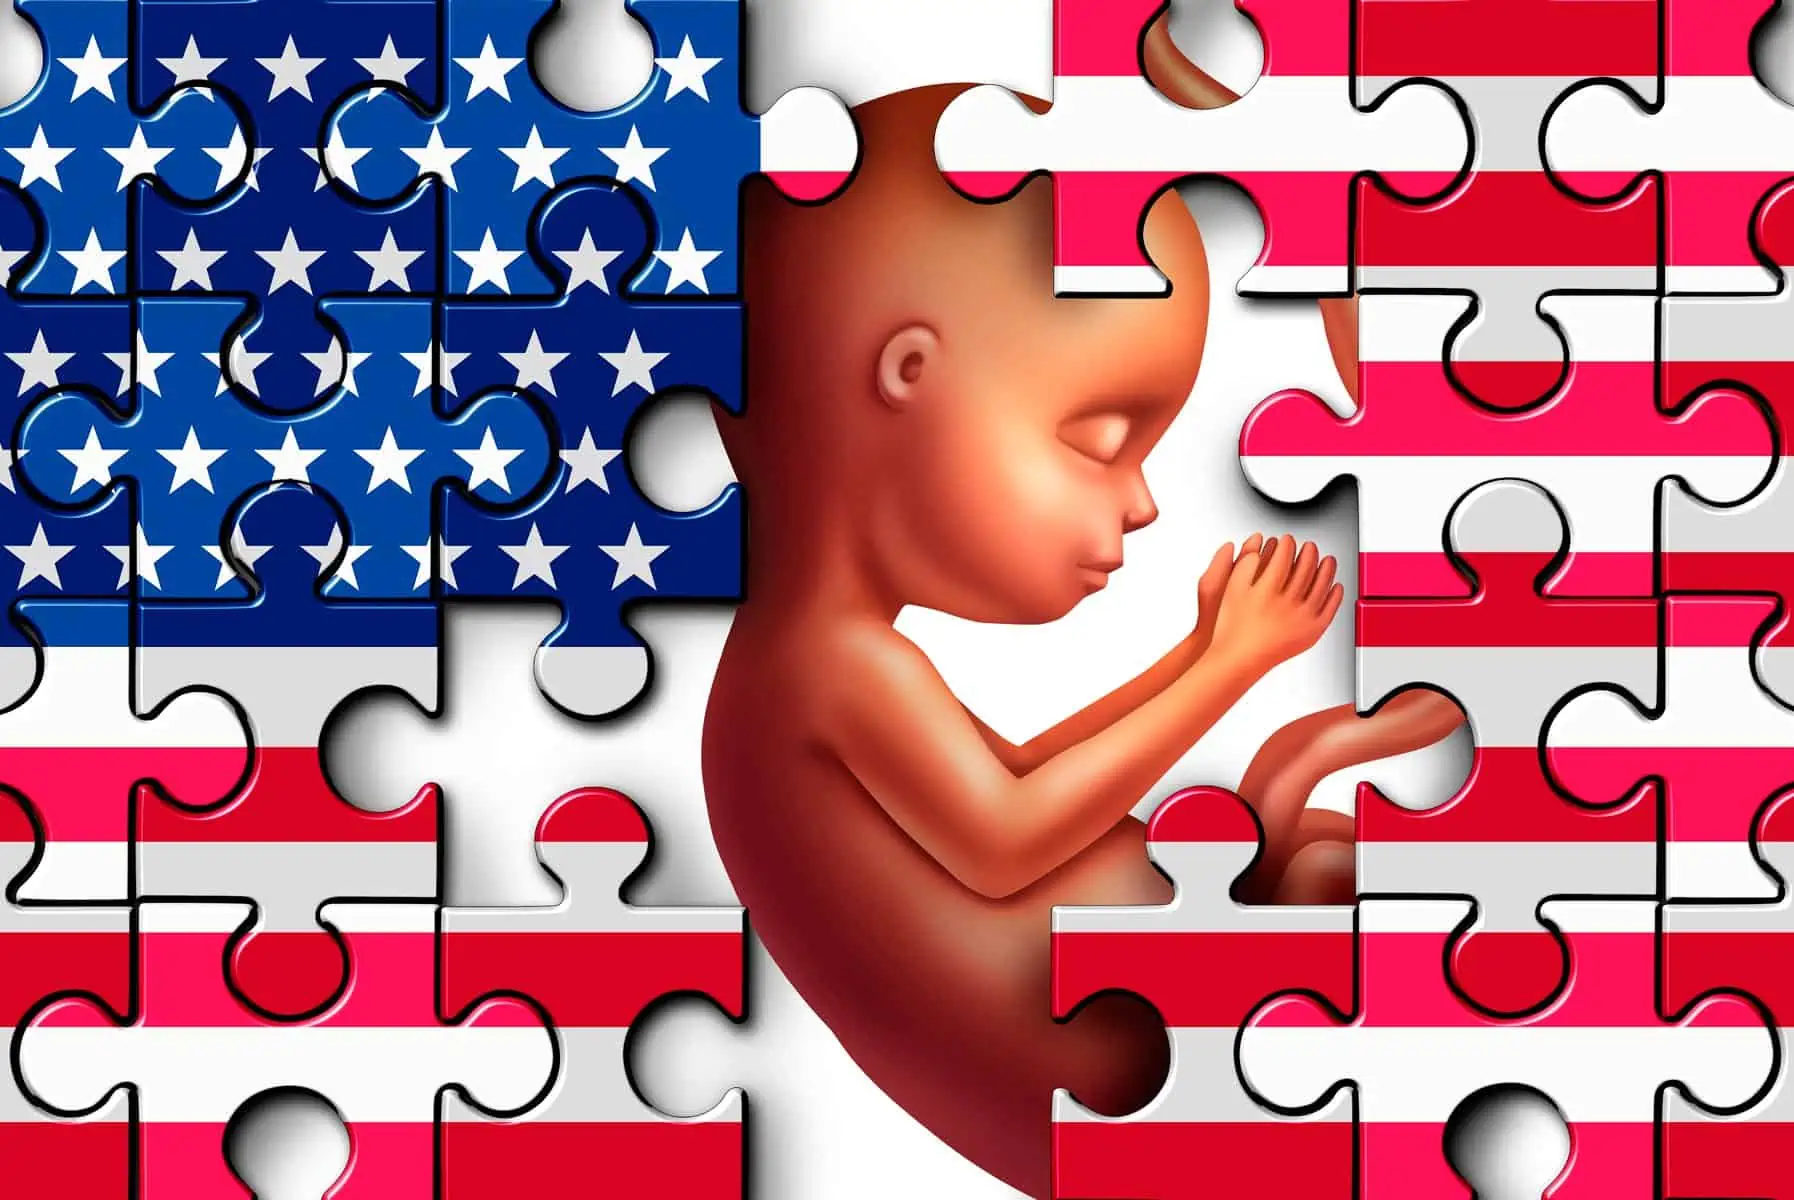 Informan Resultados de Encuesta Sobre Derecho al Aborto en Estados Unidos